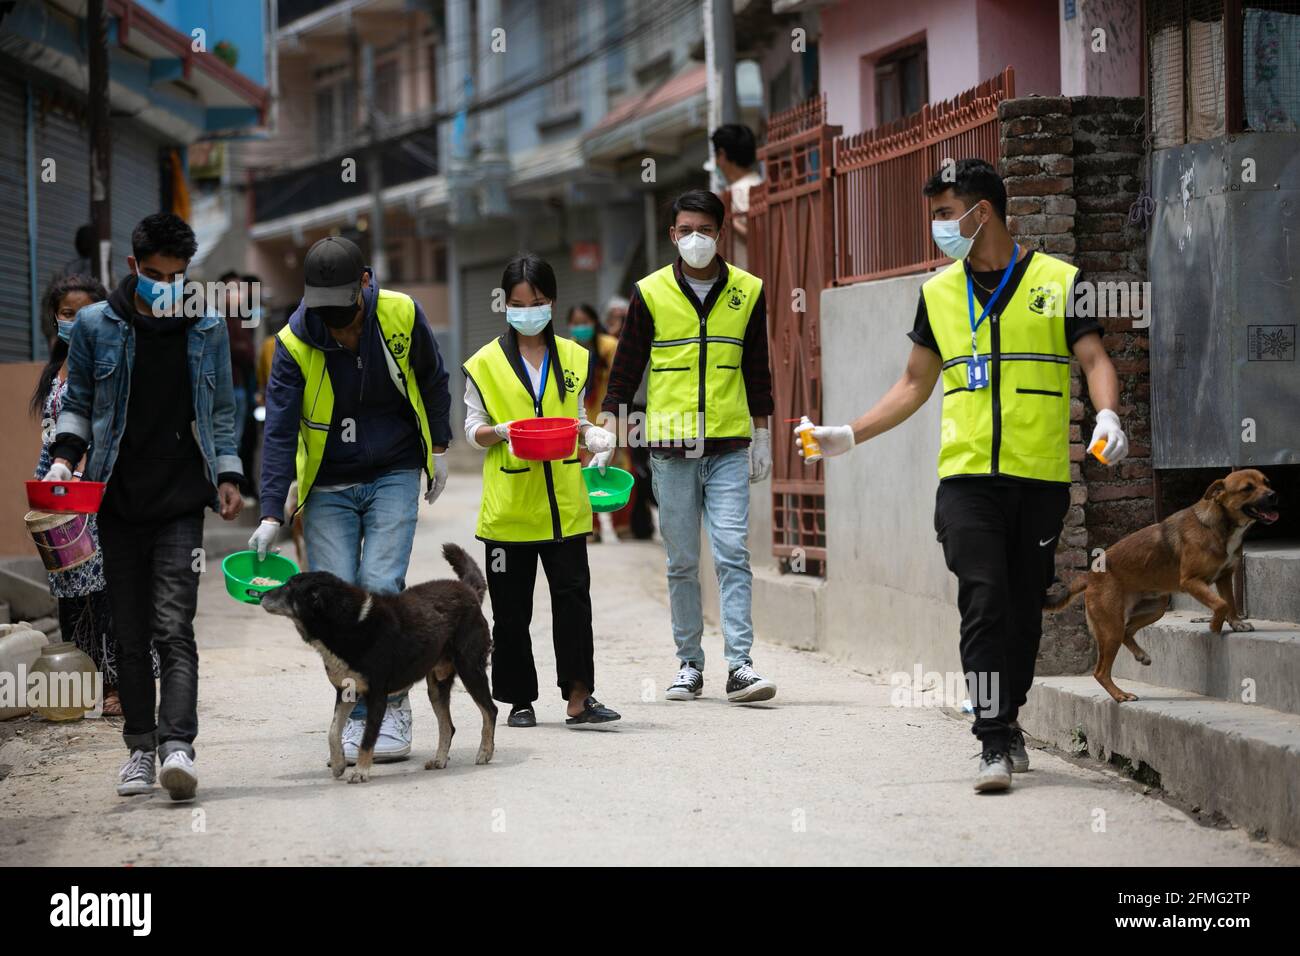 Les jeunes volontaires népalais affectés par la « protection des animaux au Népal » nourrissent des chiens errants au cours du 11ème jour de l'ordre d'interdiction en raison d'une deuxième vague de coronavirus (COVID-19) à Katmandou. Le confinement permanent imposé à l'échelle nationale par le gouvernement pour freiner la propagation du COVID-19 a rendu difficile la survie des chiens de rue. Comme les chiens de rue dépendaient autrefois de la nourriture donnée par les habitants, l'interdiction aux gens de sortir de leurs maisons a conduit les chiens de rue à mourir de faim. Banque D'Images